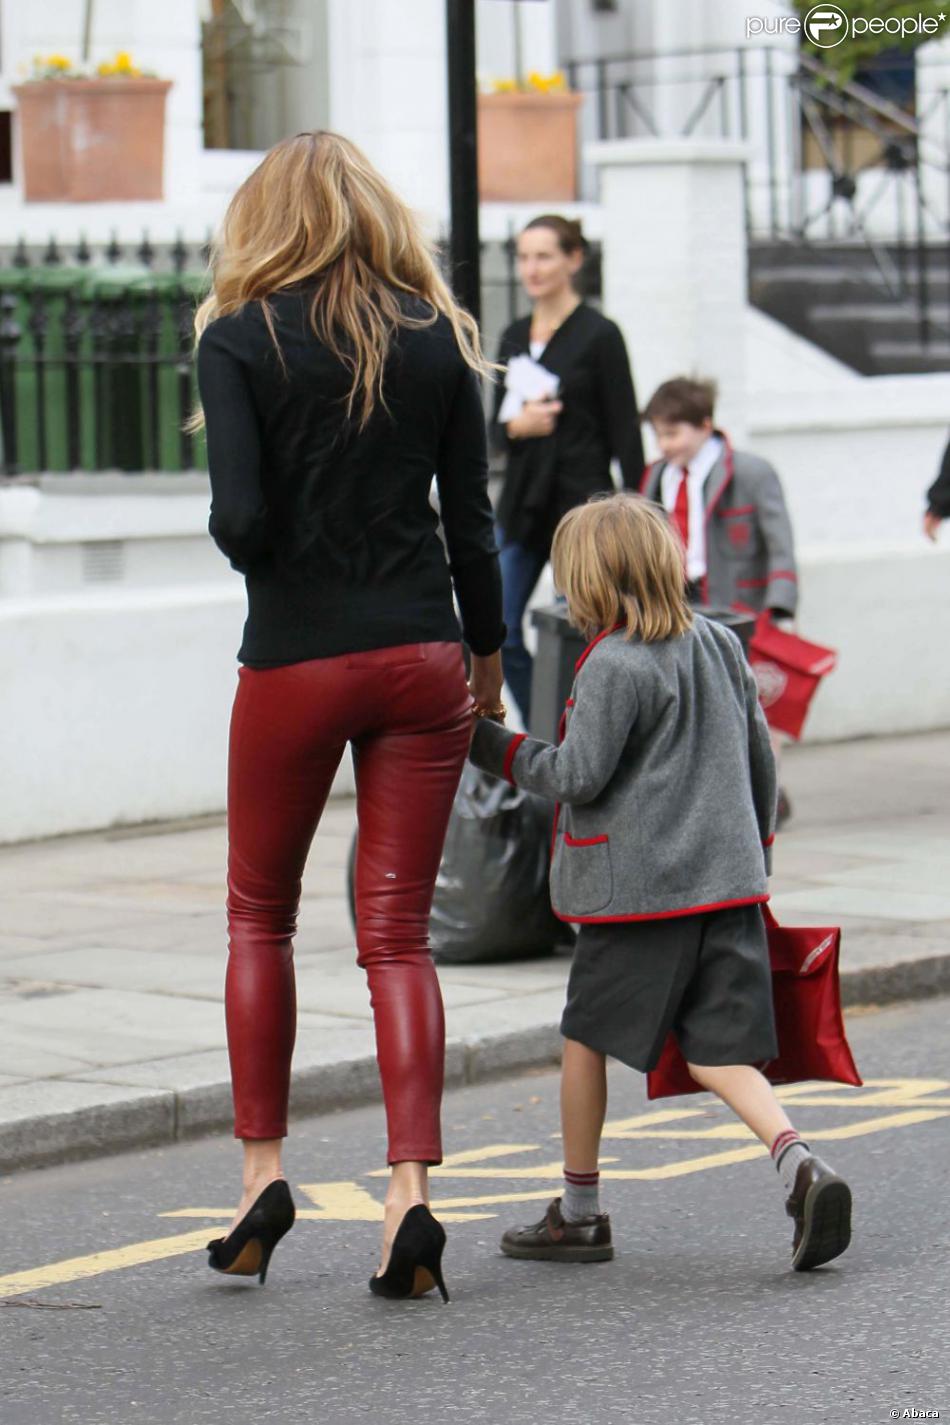 tanker jewelry skin Pantalon en cuir rouge, top noir... Elle McPherson est craquante ! Londres,  23 mai 2011 - Purepeople